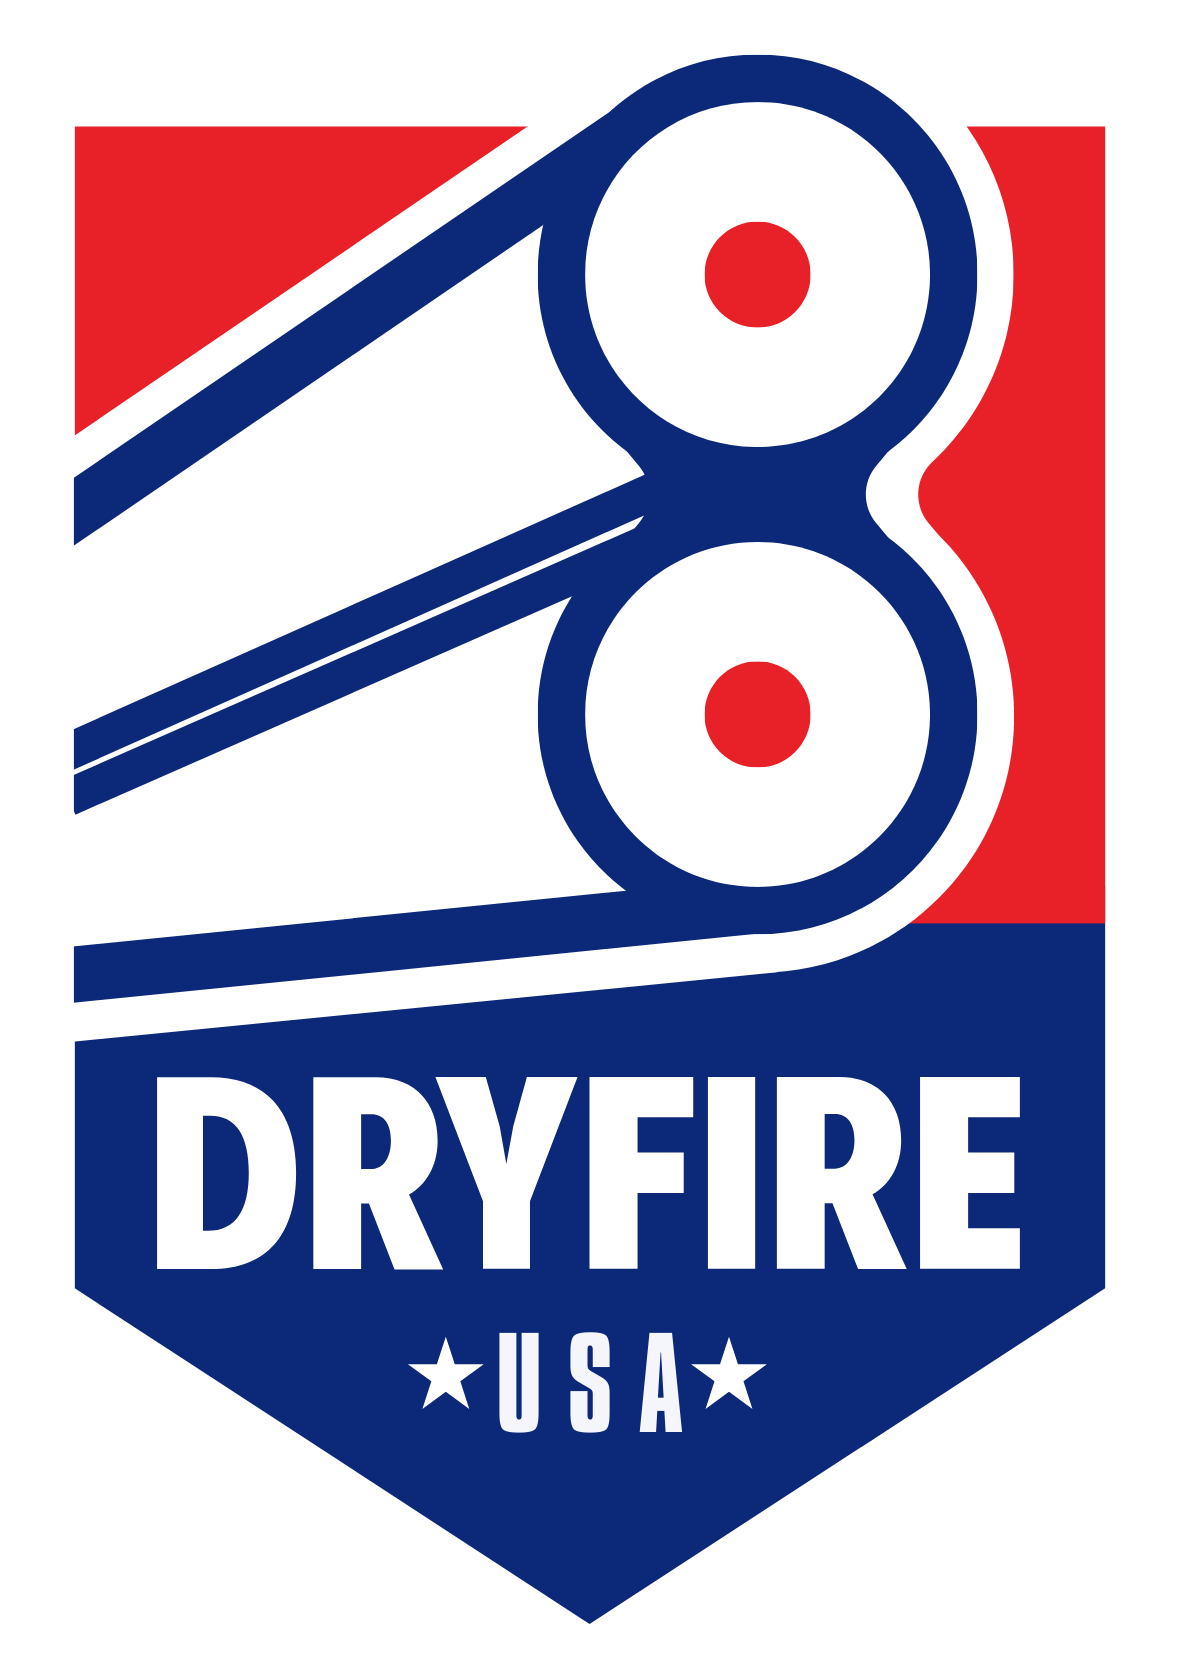 Dryfire USA Logo - Target Simulators for Trap, Skeet, Sporting Clays